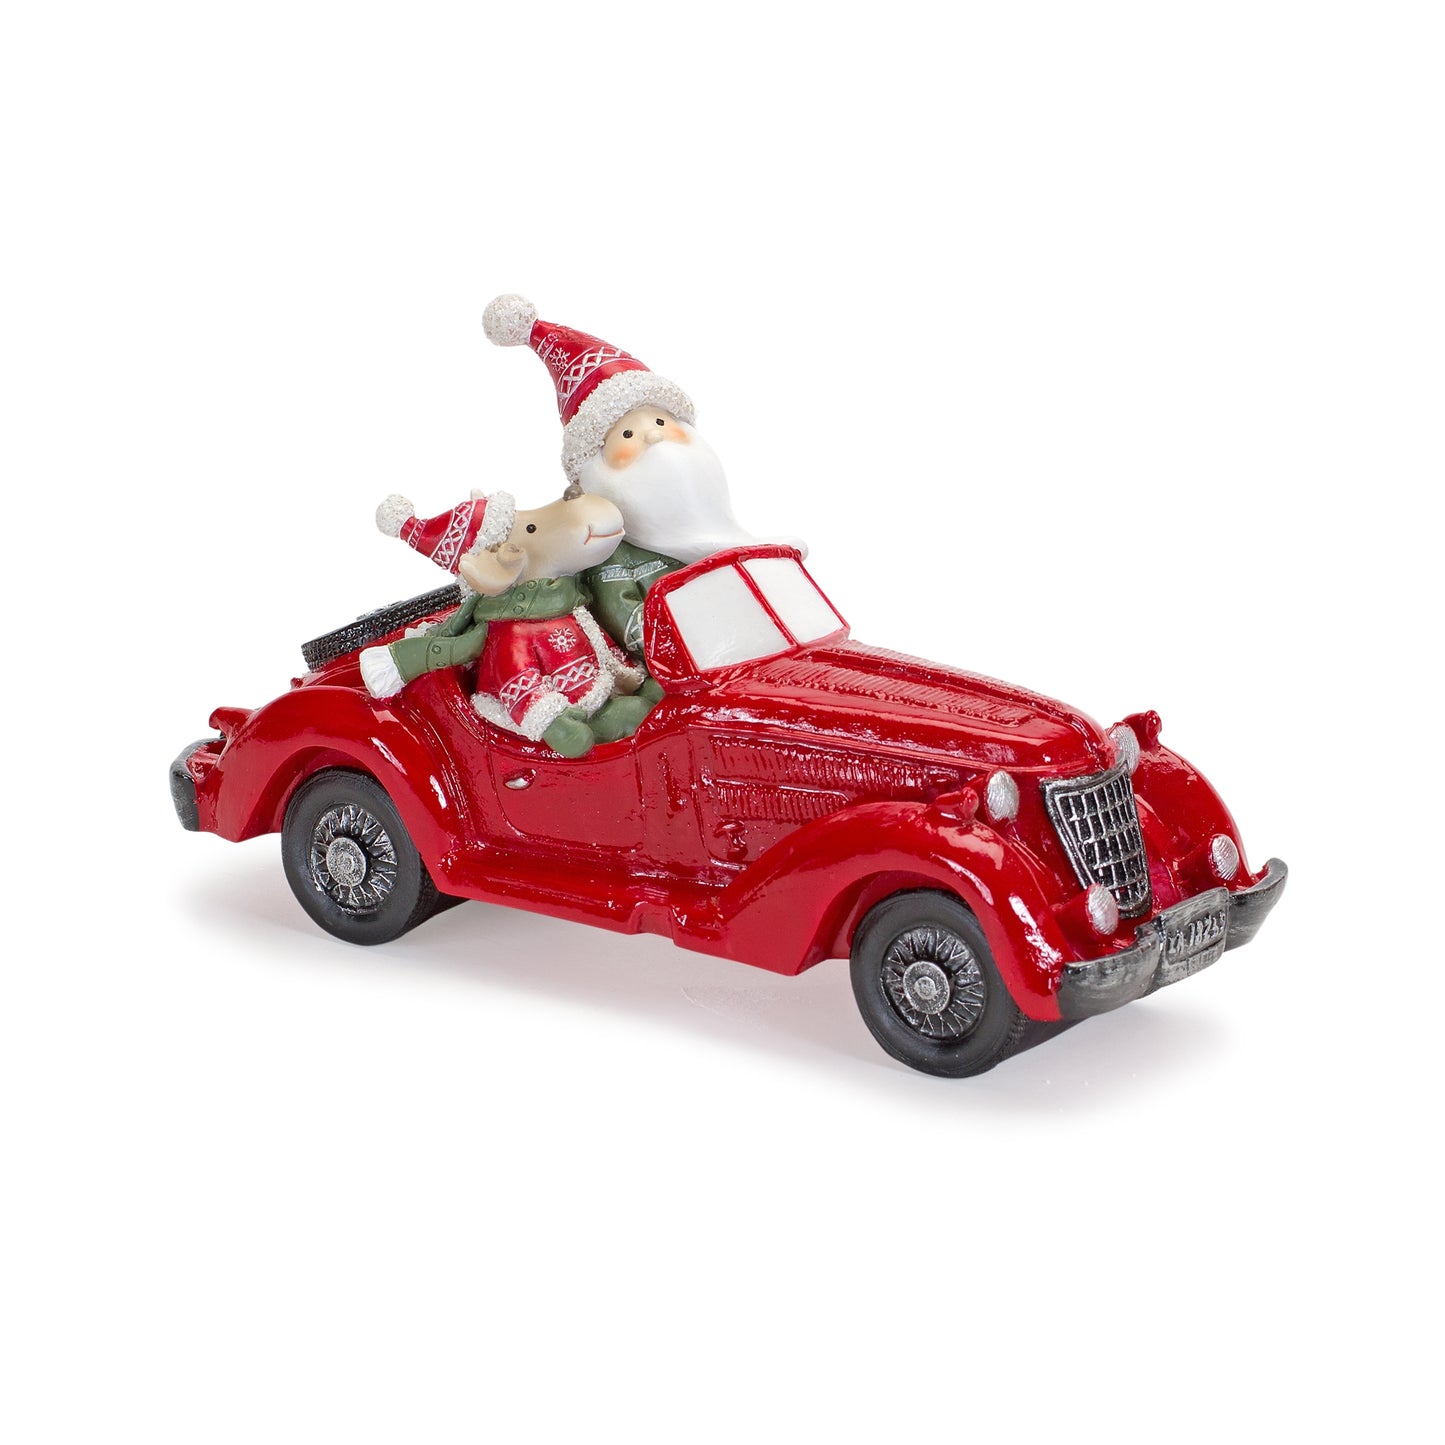 8.75"L x 5"H Resin Santa & Moose Car Figurine